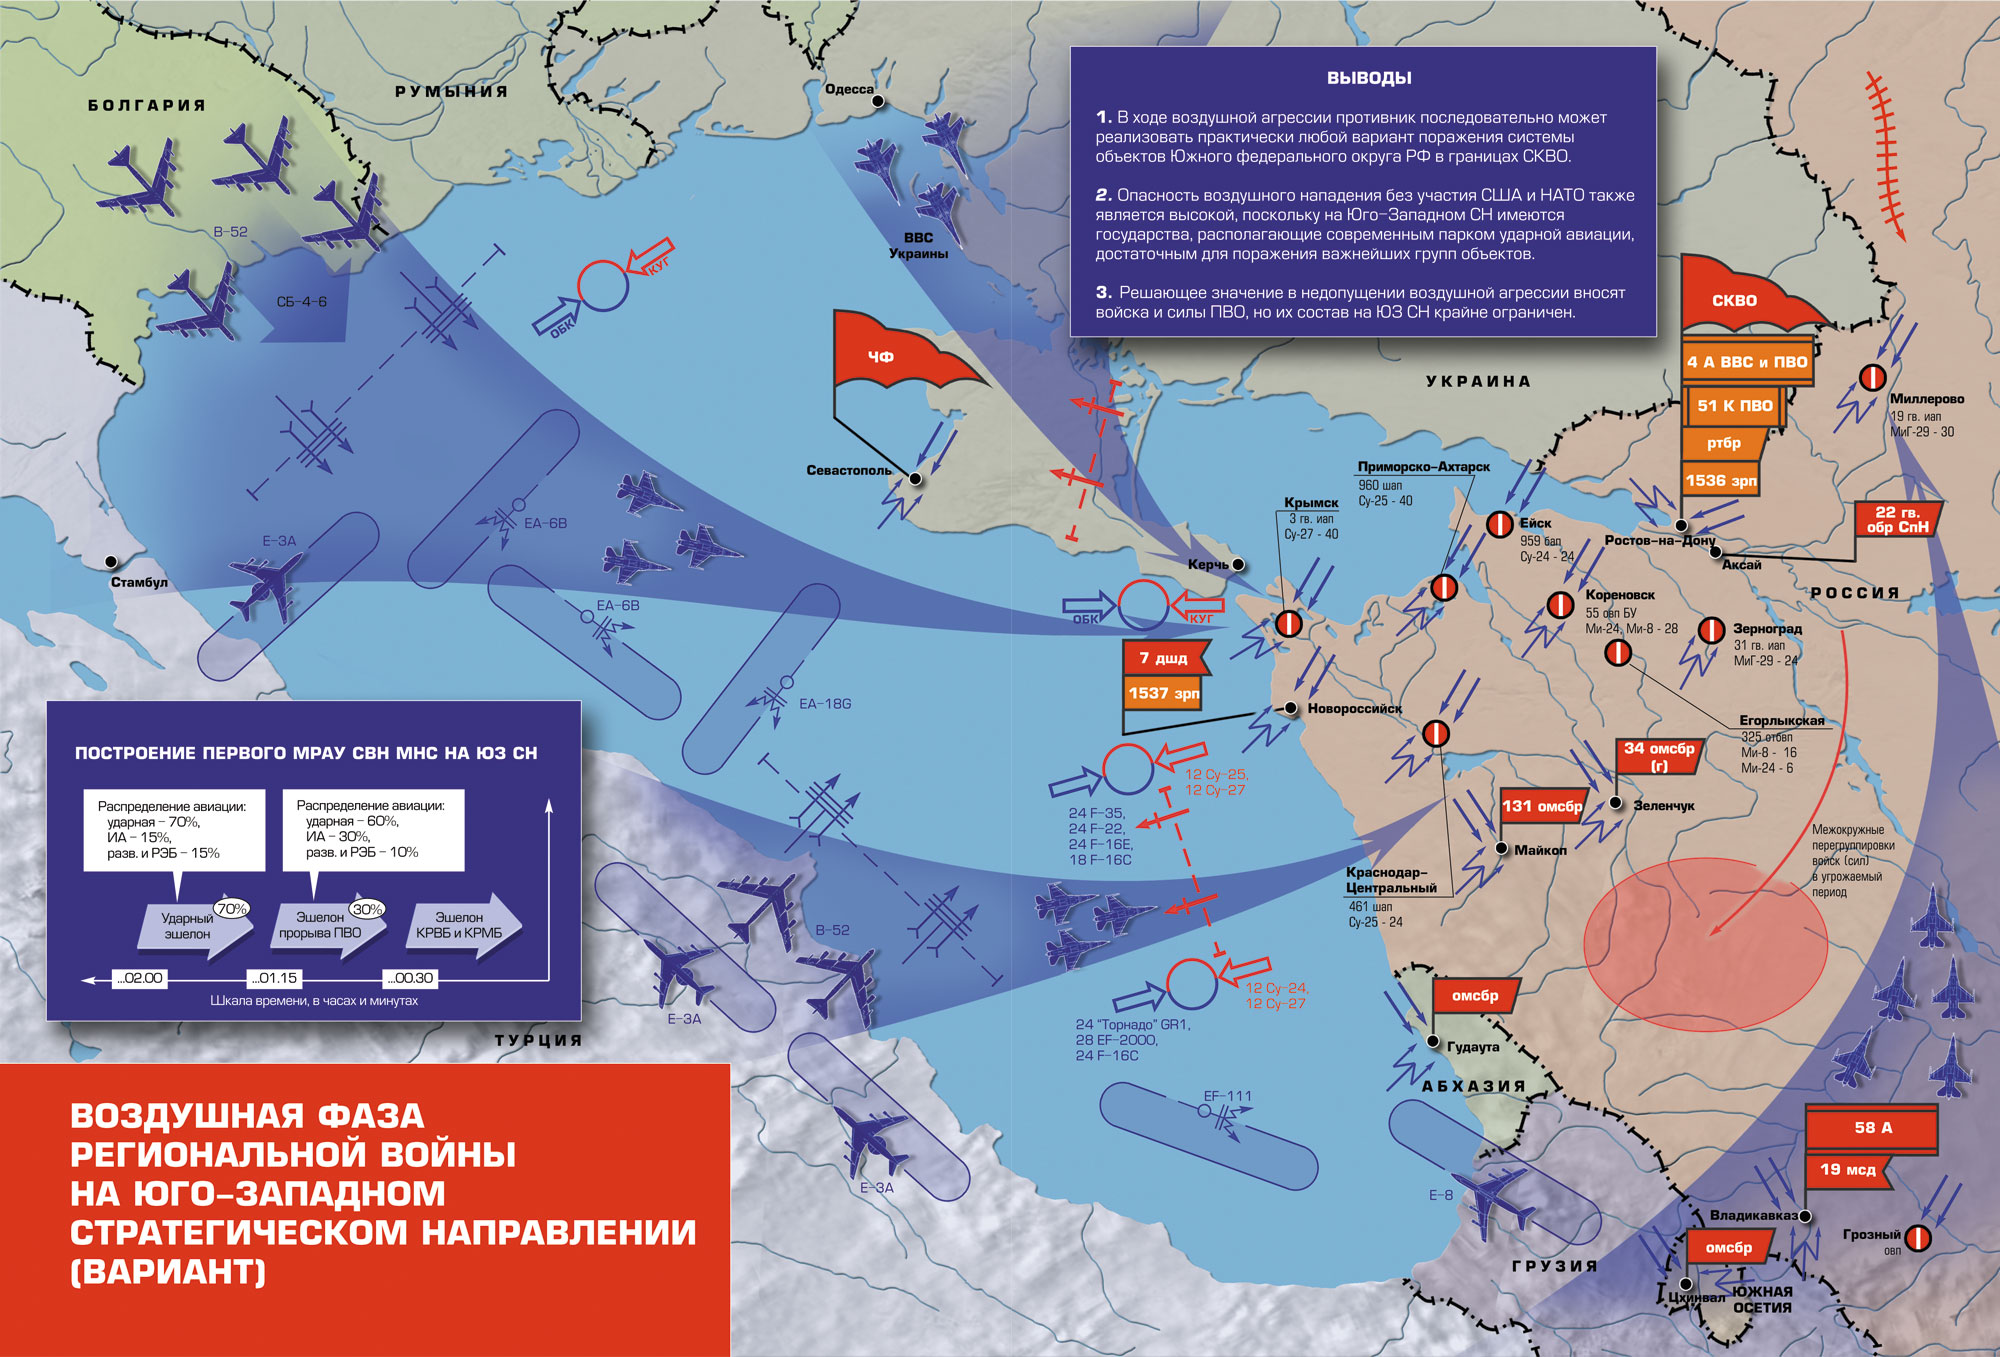 Военная операция прогнозы. ПВО НАТО на карте. Военные стратегические направления. Юго-Западное стратегическое направление. Западное стратегическое направление России.